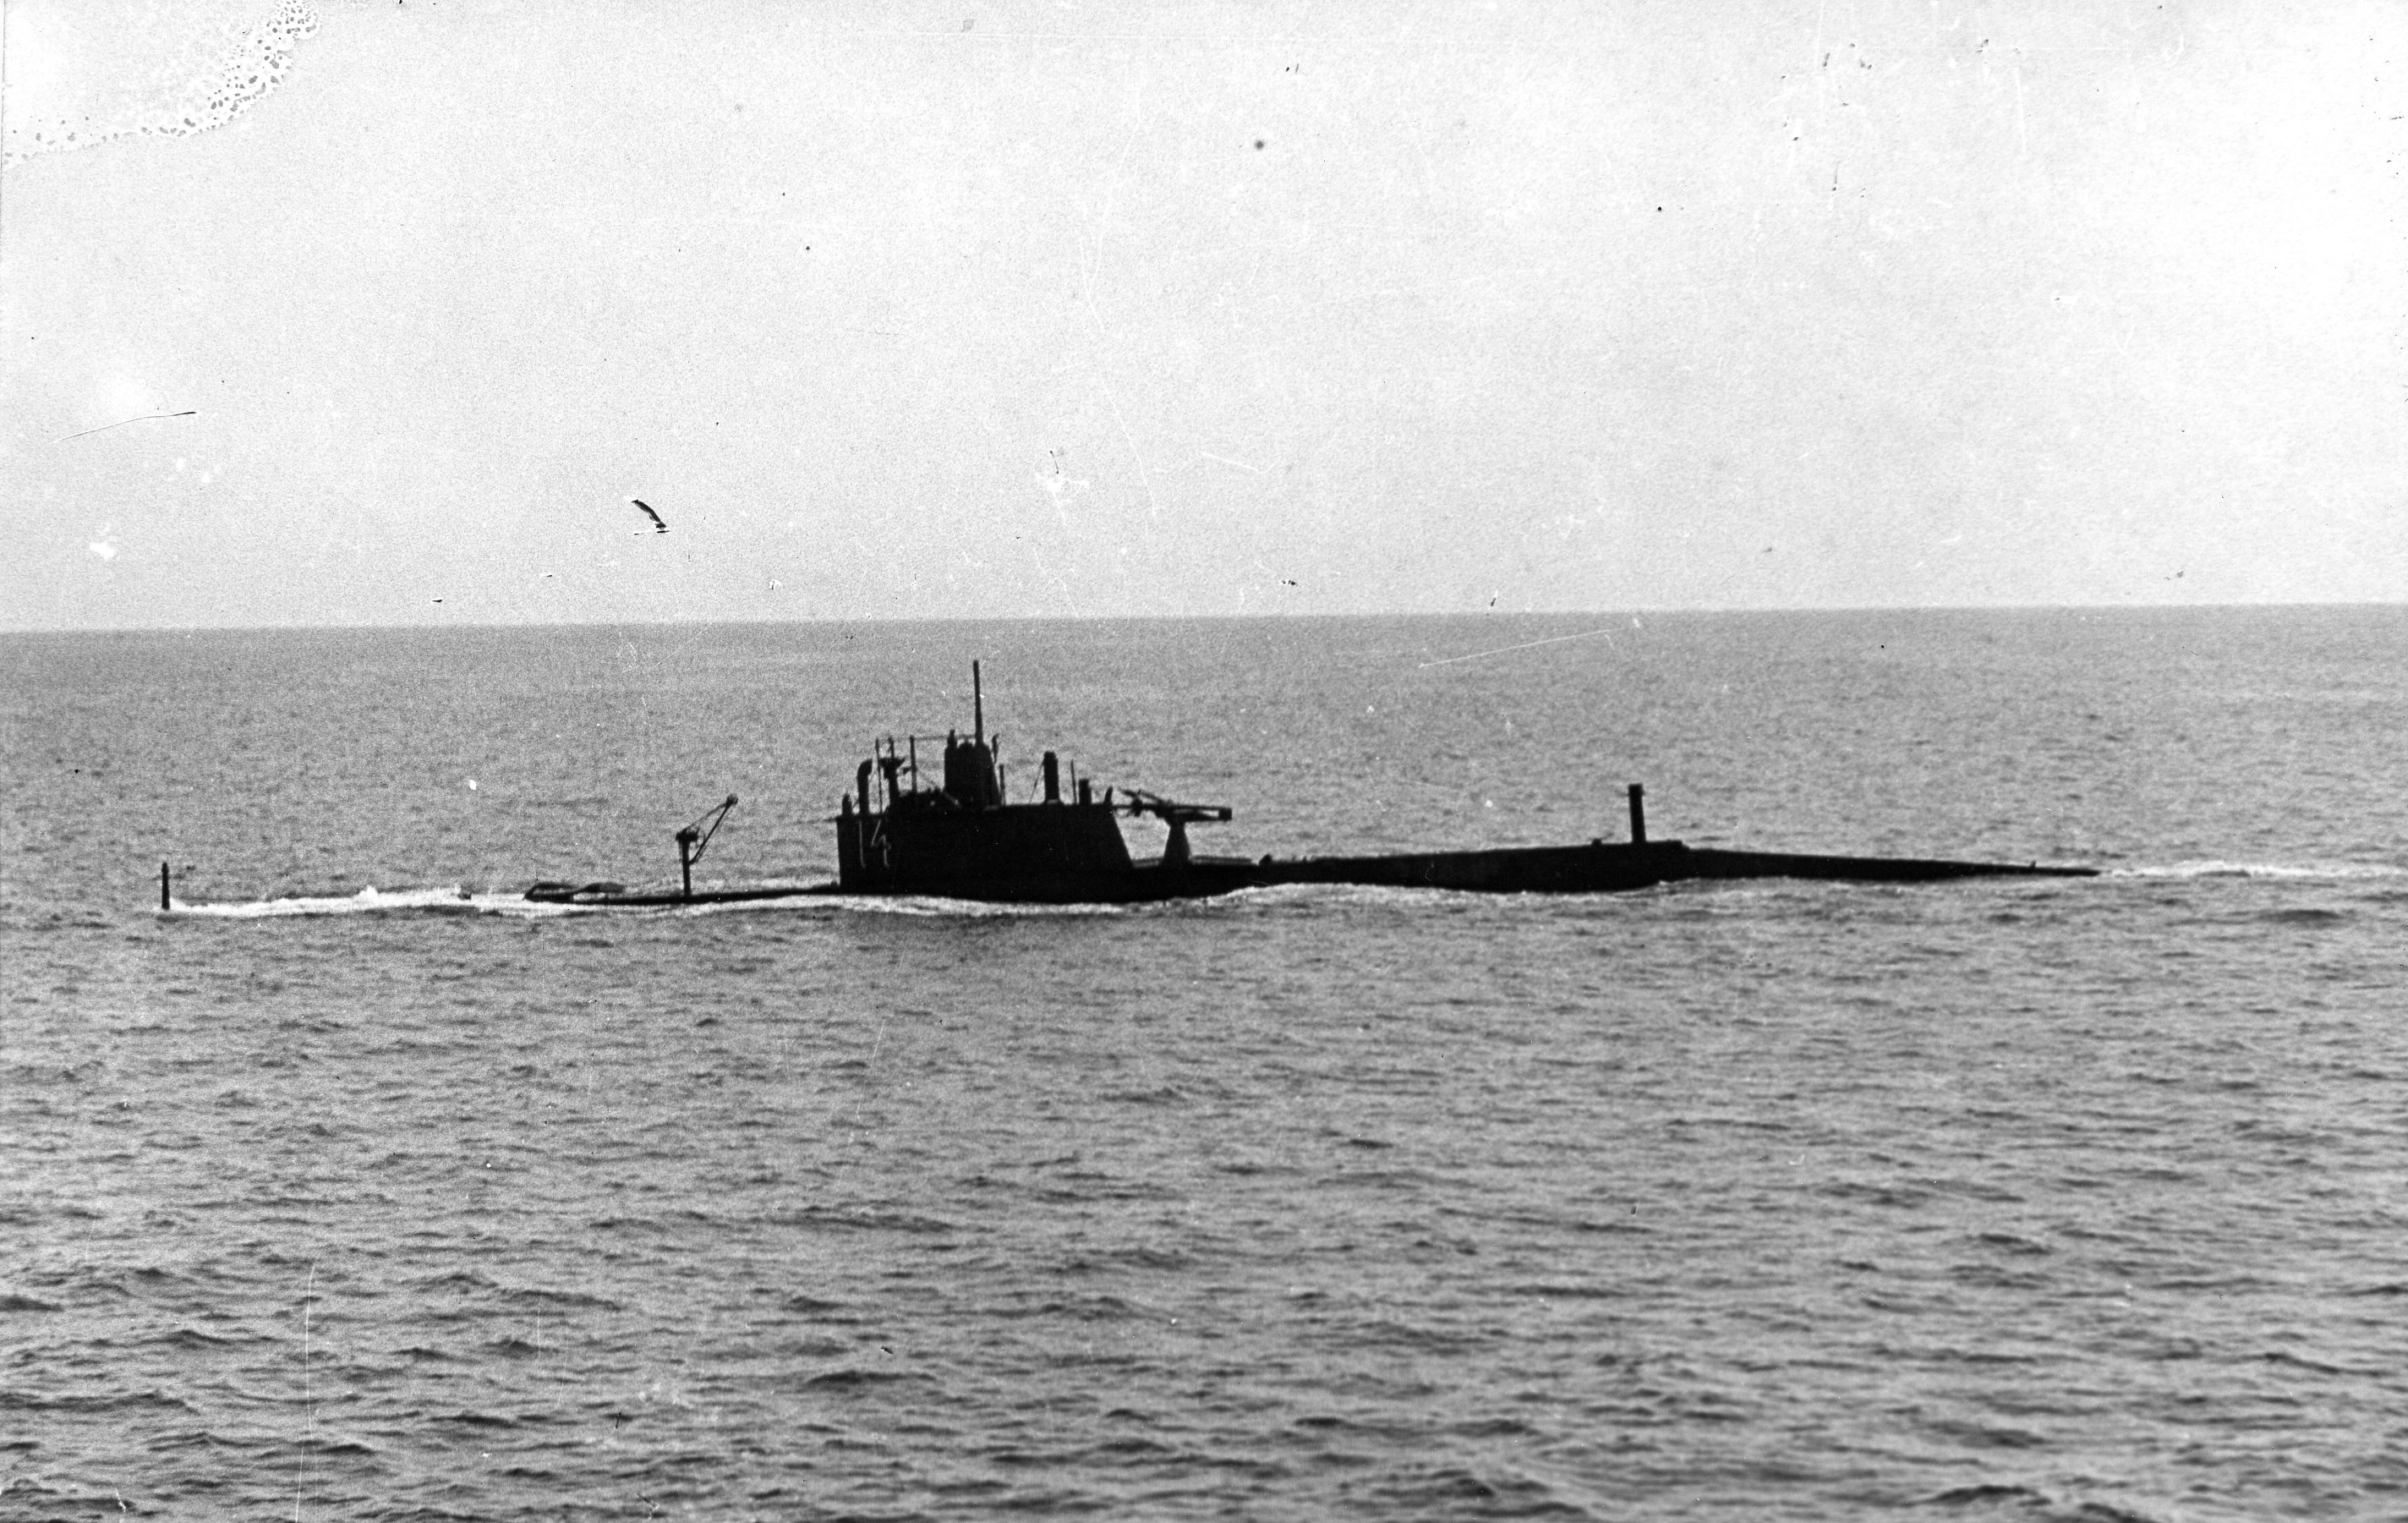 Черноморский подводный флот. Подводная лодка американский Голланд. Подводная лодка АГ-15. Подводные лодки проекта 602 «американский Голланд». Подводные лодки Черноморского флота типа АГ.